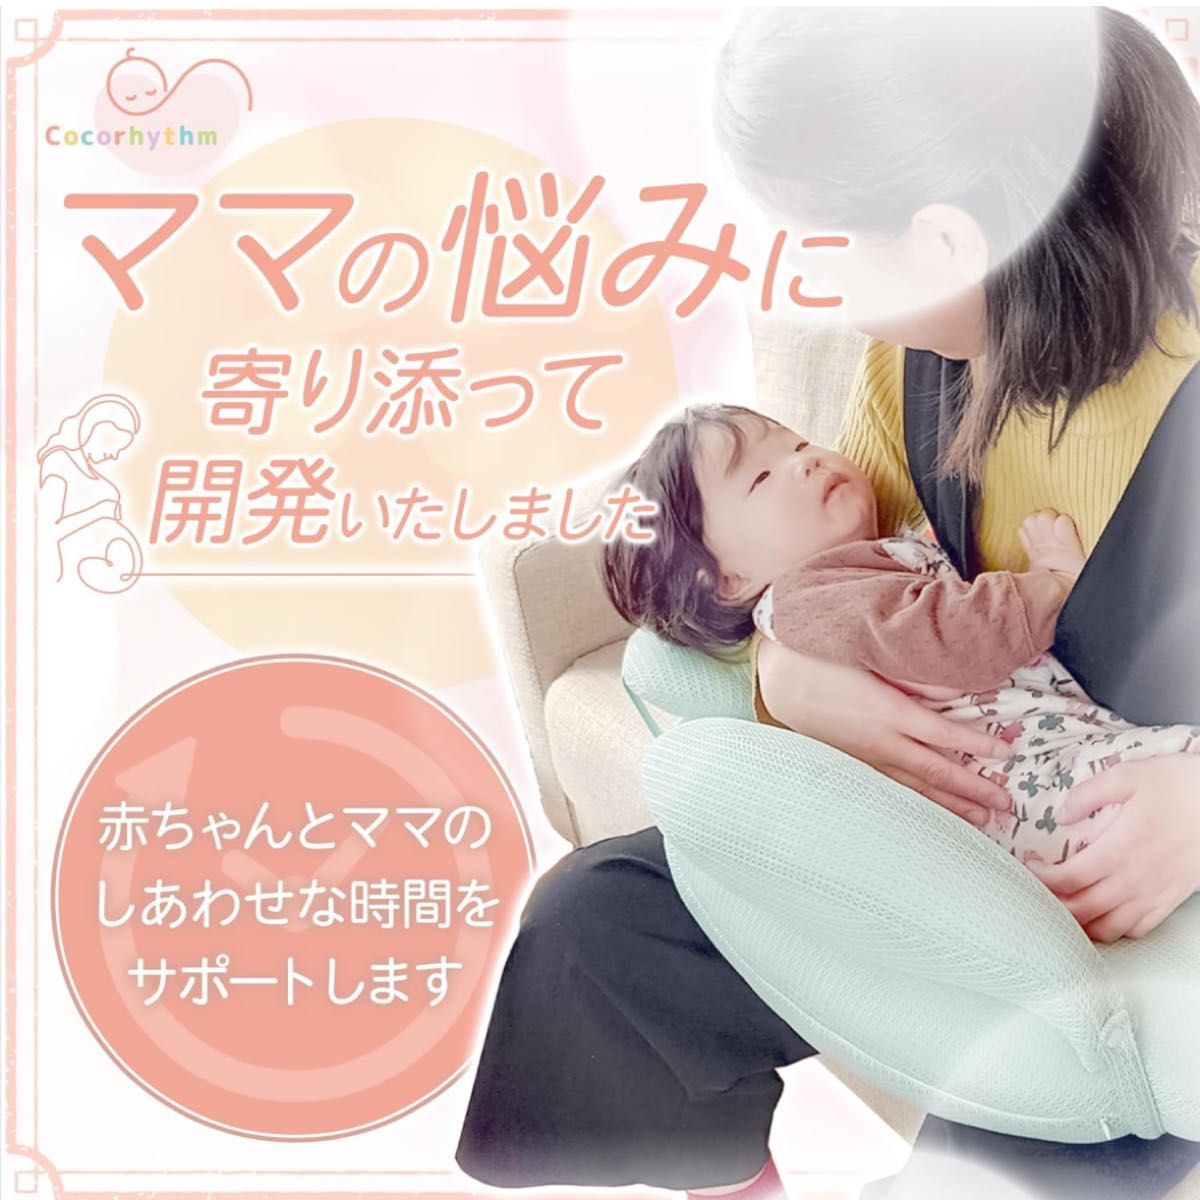 ココリズム (Cocorhythm) 授乳クッション Nursing Pillow 【助産師監修】 綿 洗える 授乳用 負担軽減 